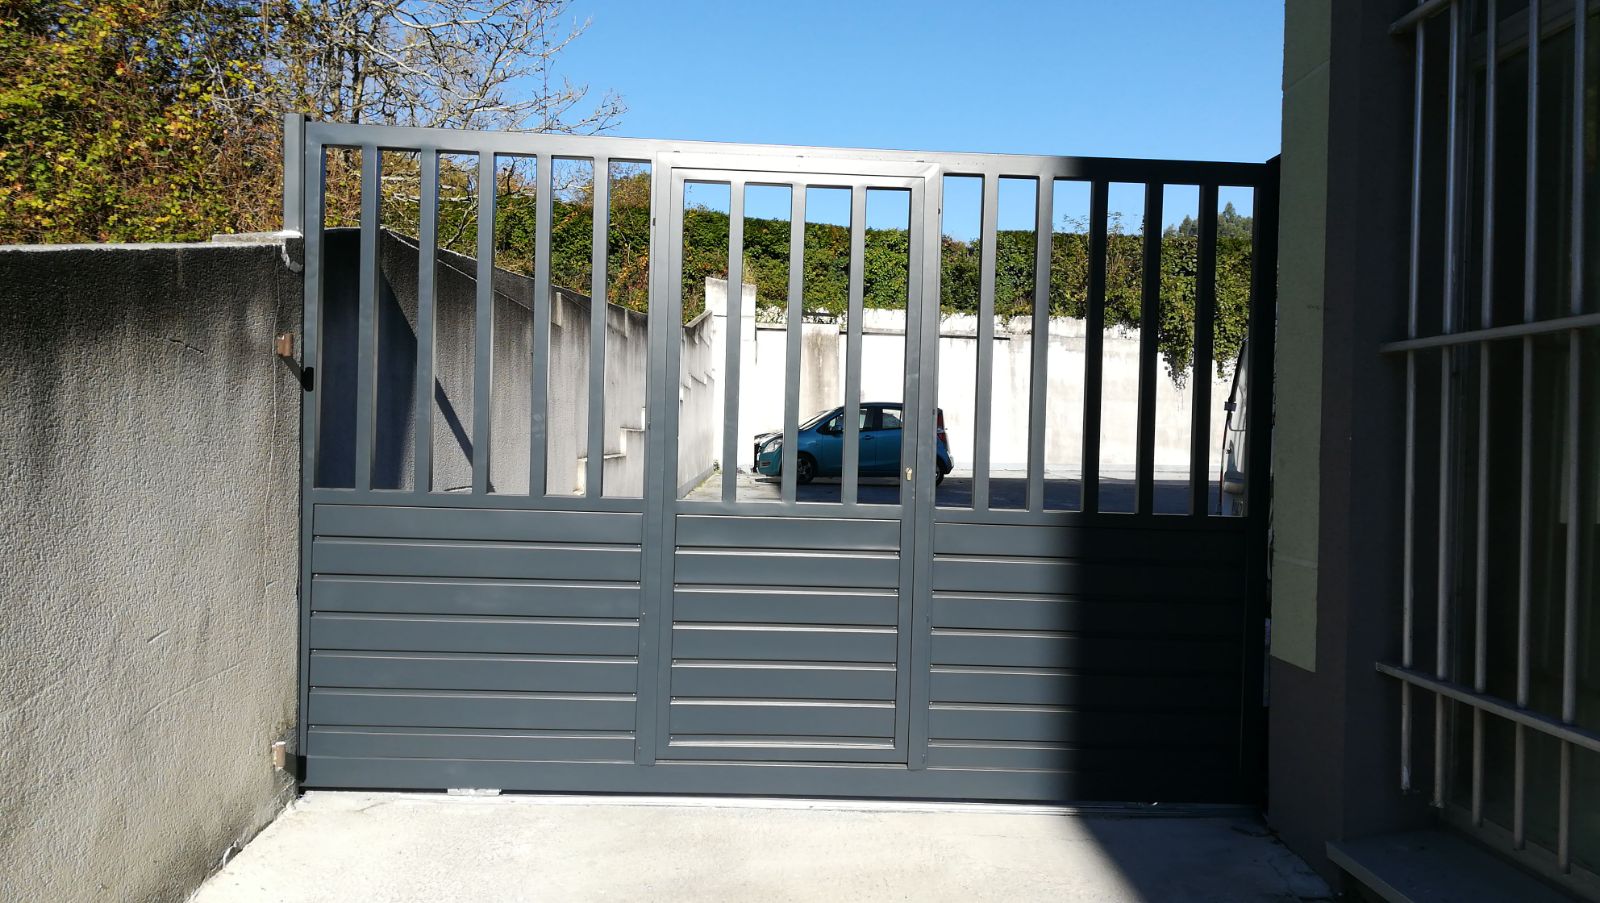 Puertas abatibles de acero galvanizado - Portagal